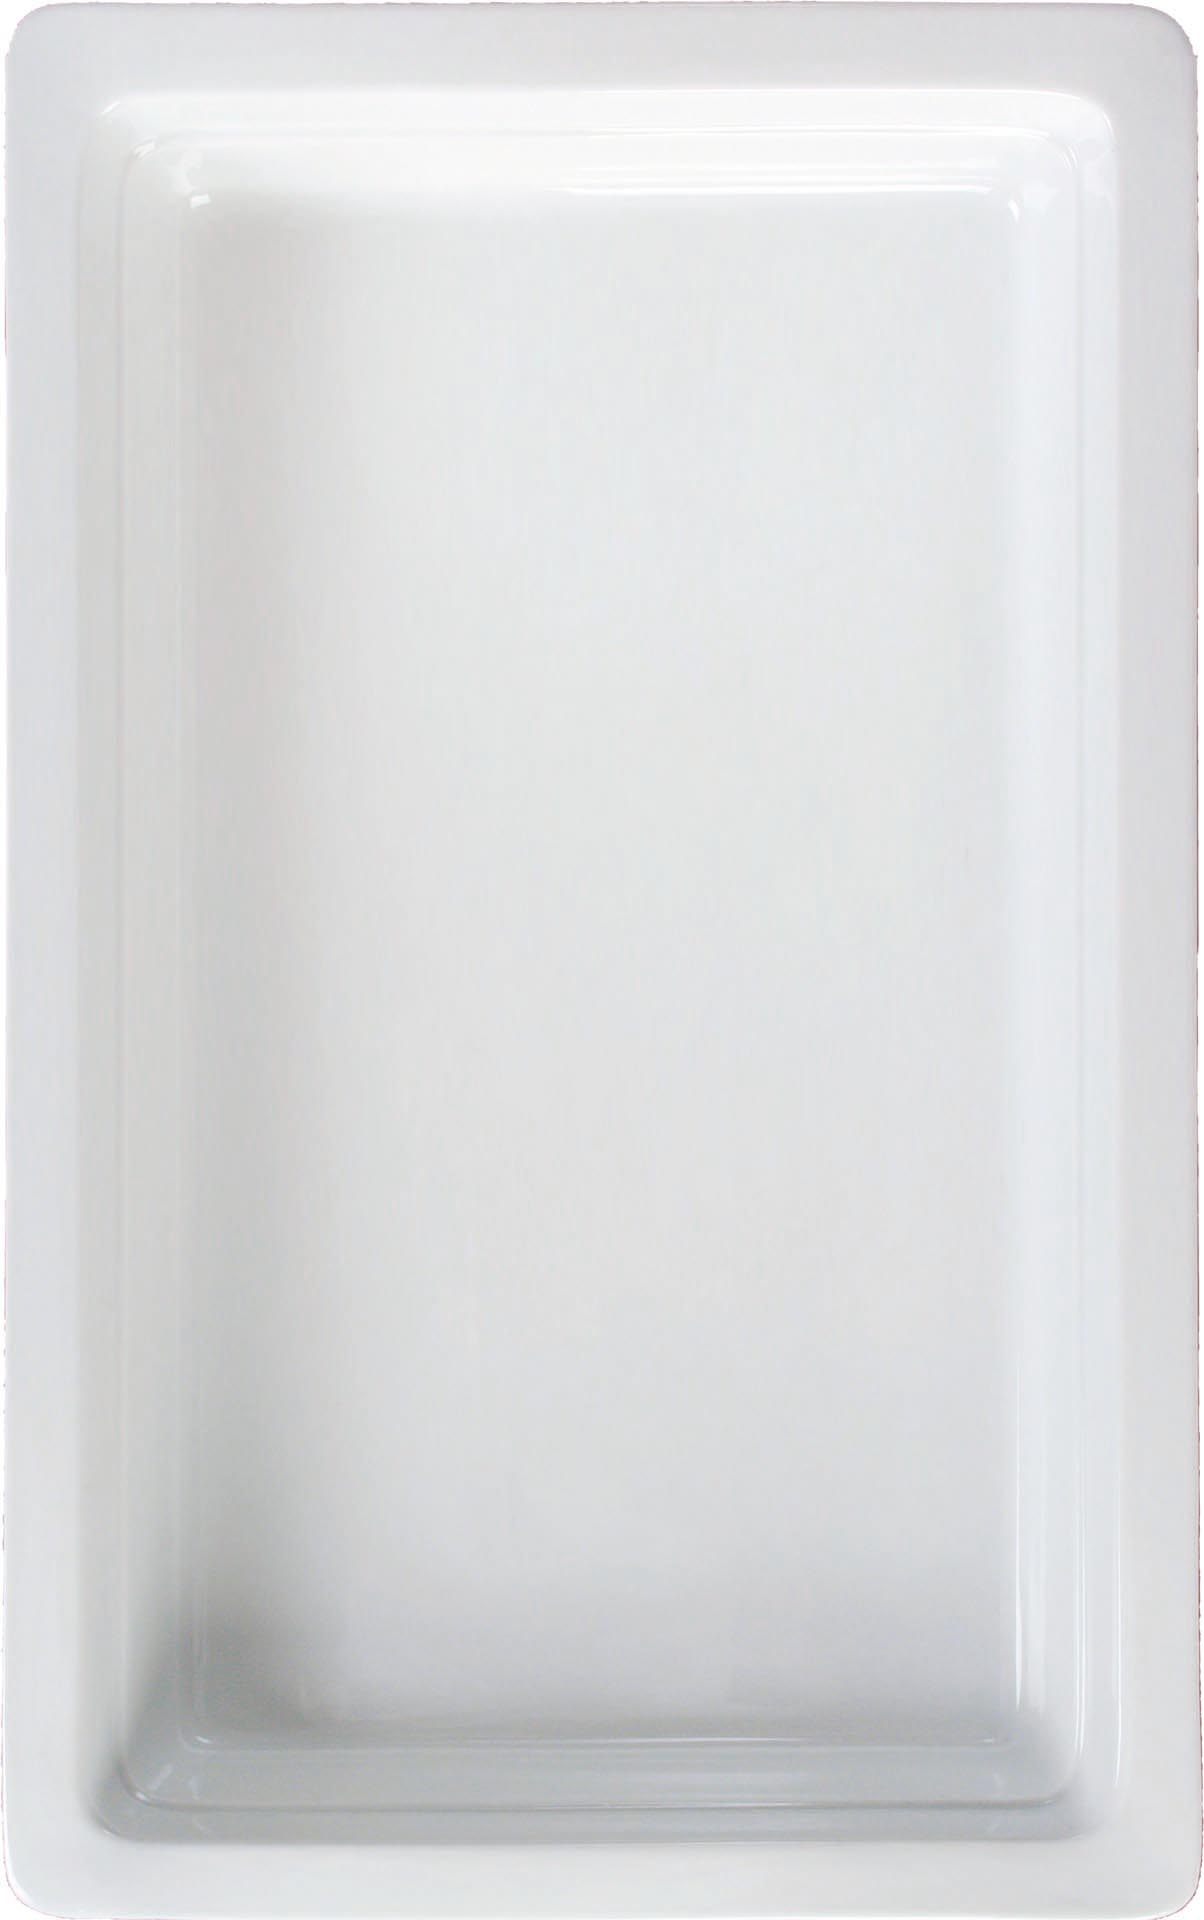 GN-Behälter Porzellan weiss GN 1/1-65 Inhalt: 6,5 Liter